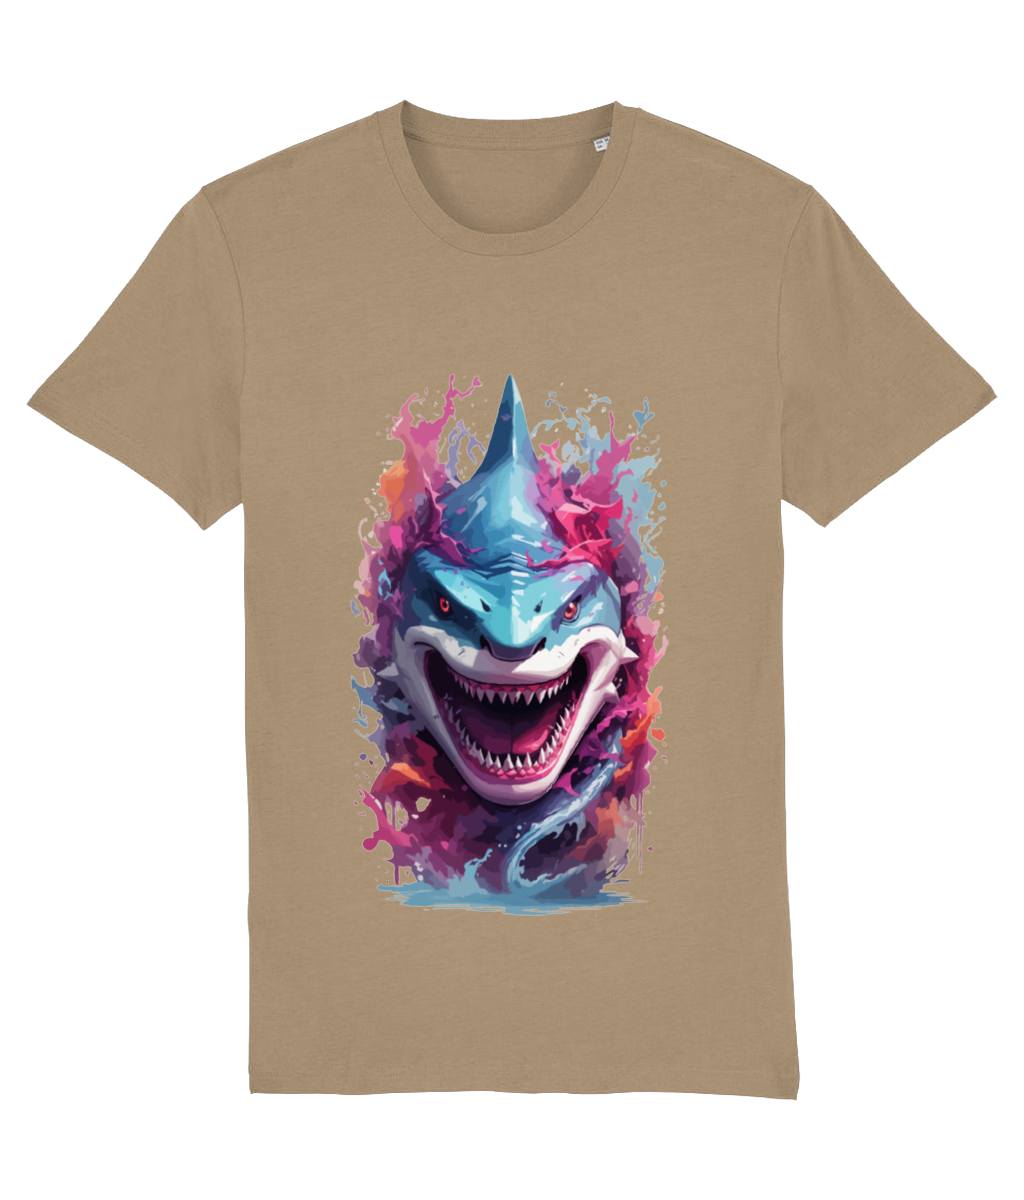 Arty Shark Print T-Shirt